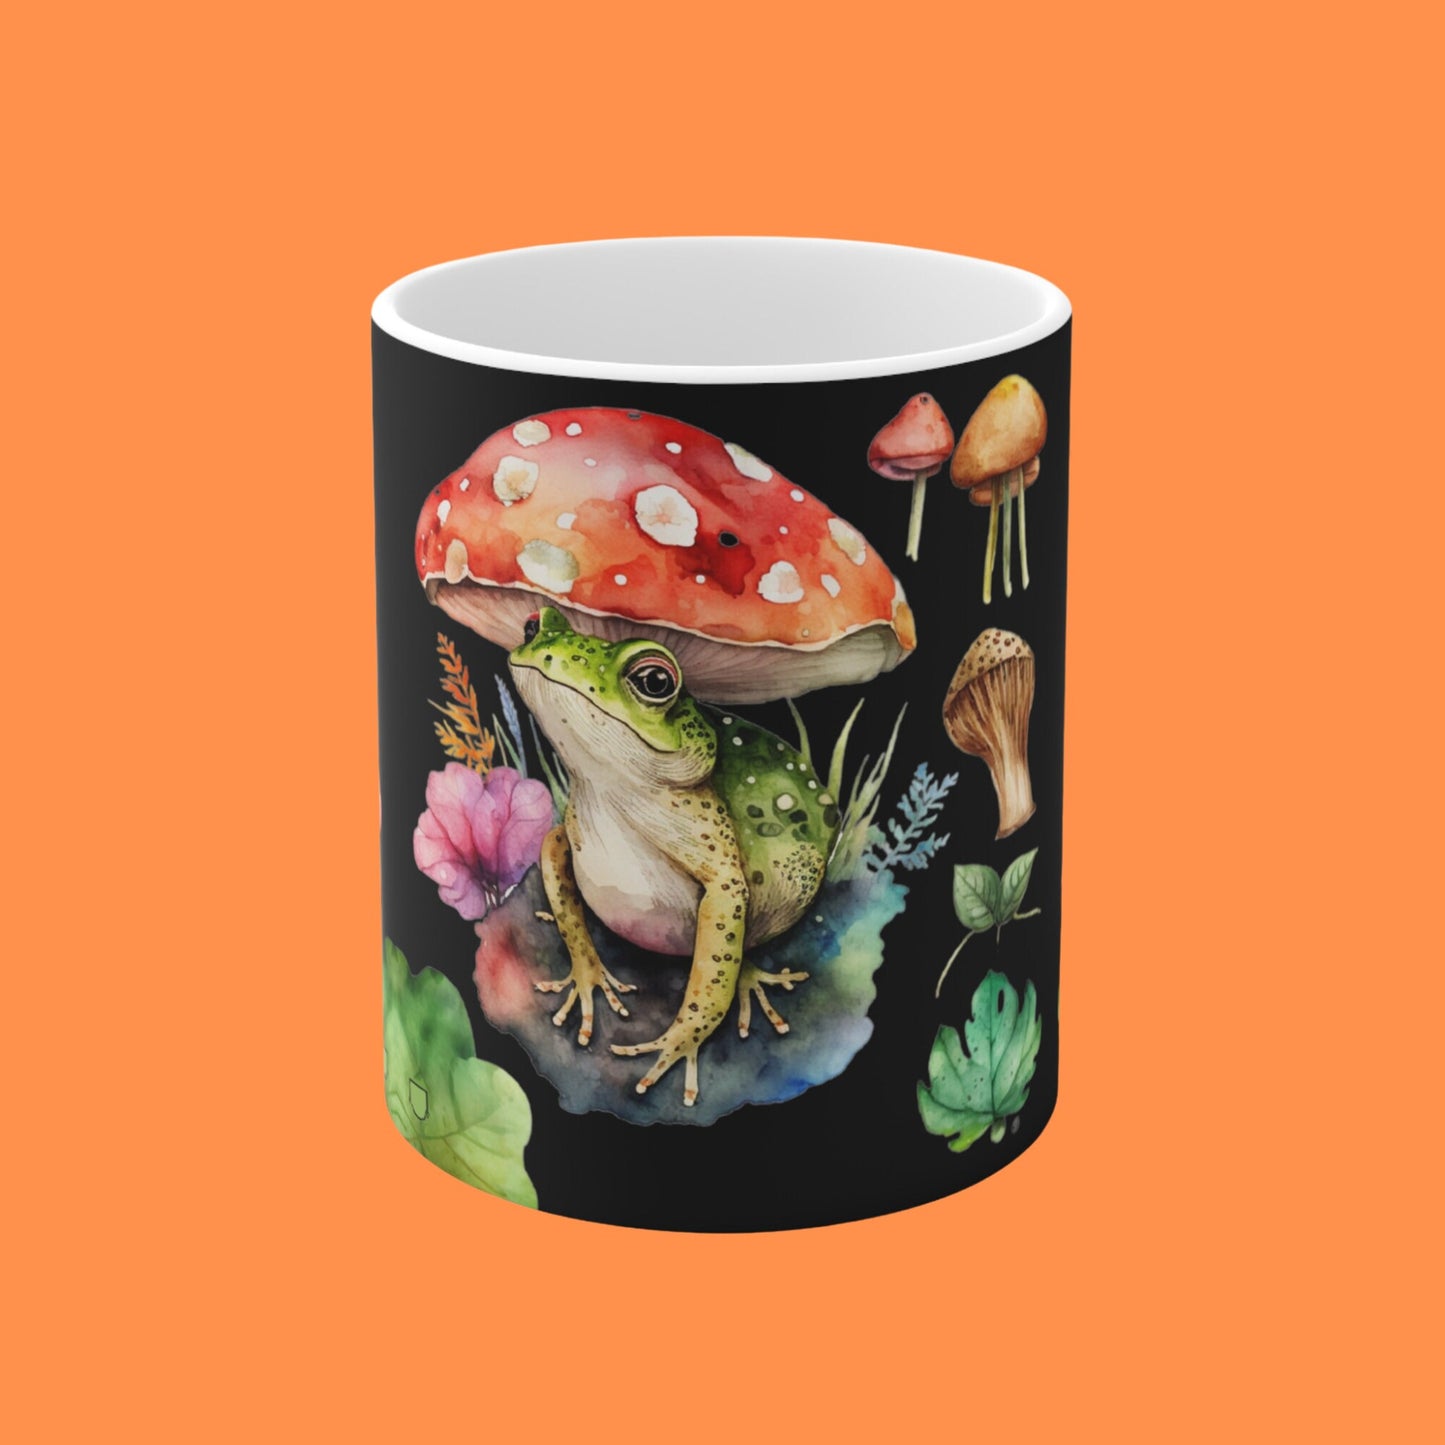 Toadstool Mushroom Frog Mug Mushroom Lover Cup For Frog Lover Mushroom Fungi Mug For Fungi Lover